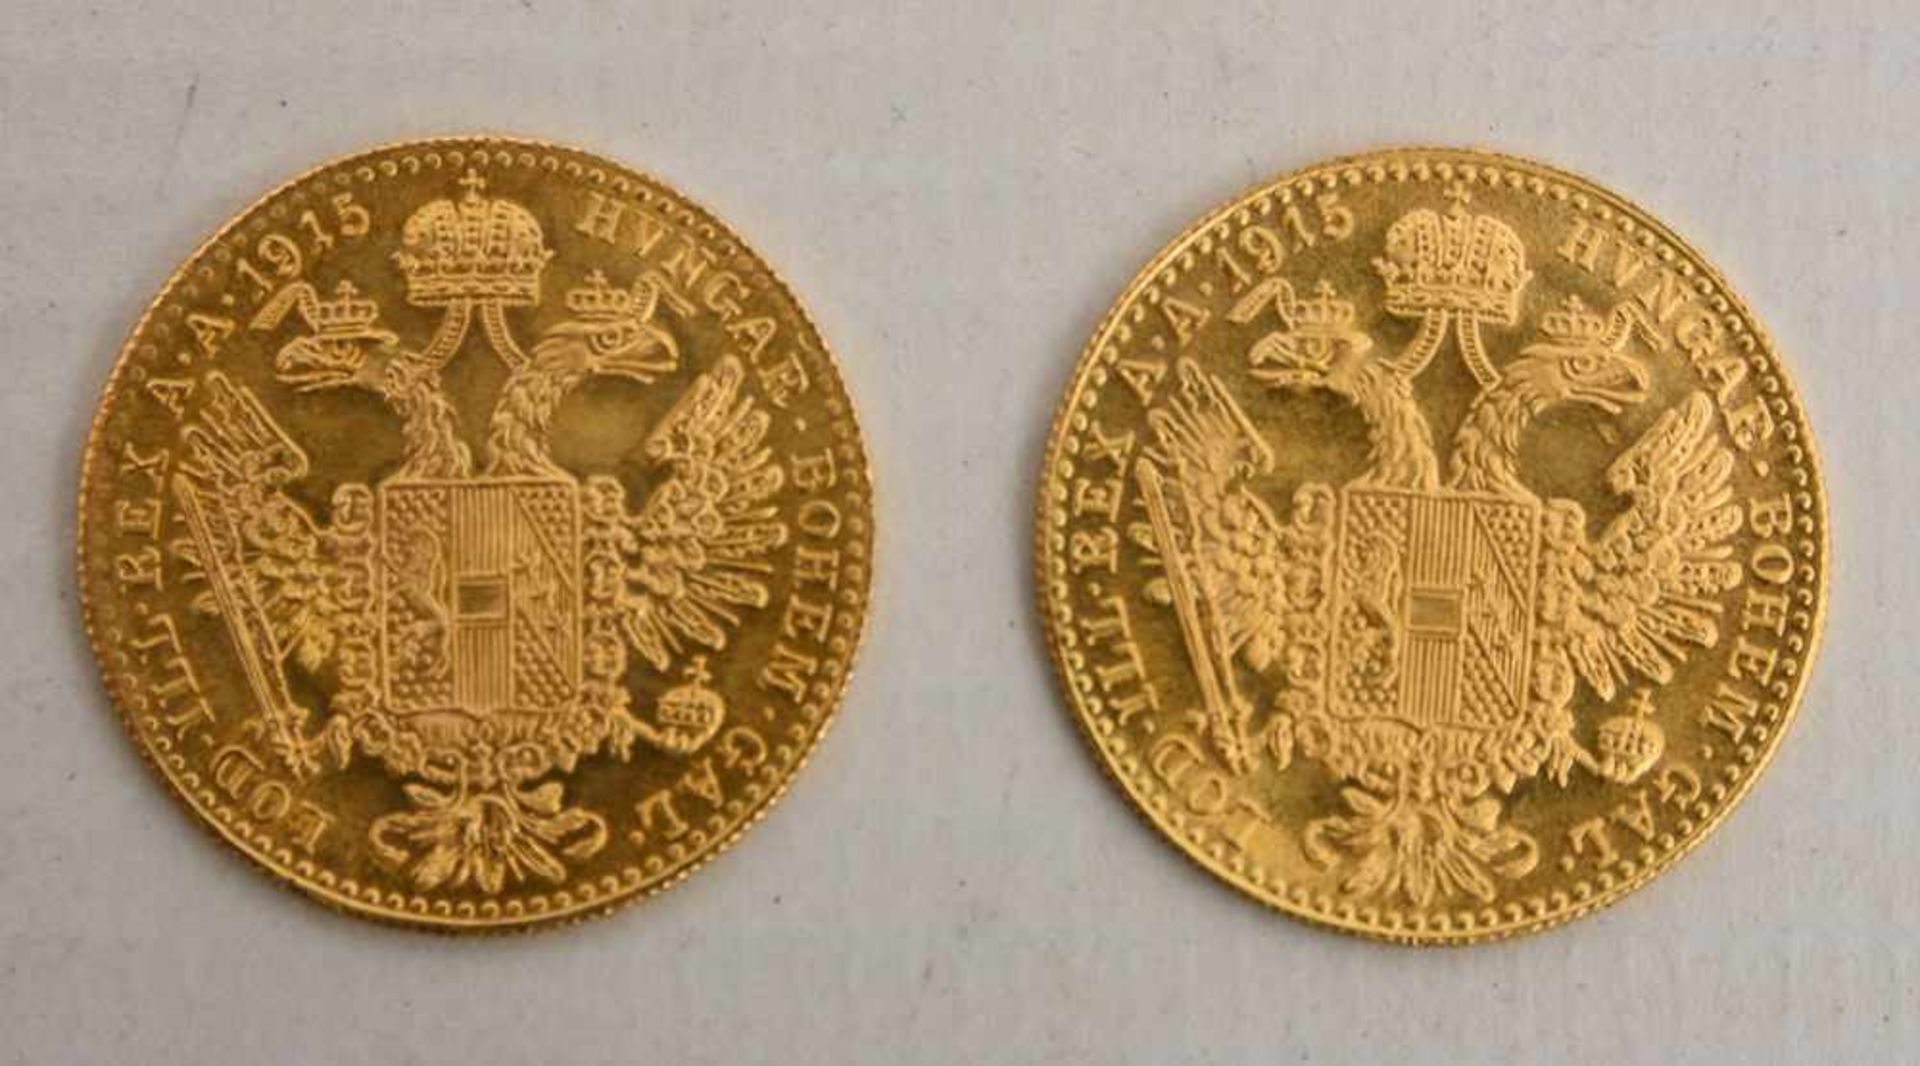 GOLDMÜNZEN KONVOLUT, Dukaten und Florin, 19. und. 20. Jahrhundert (3) 6 Münzen Konvolut bestehend - Image 5 of 9